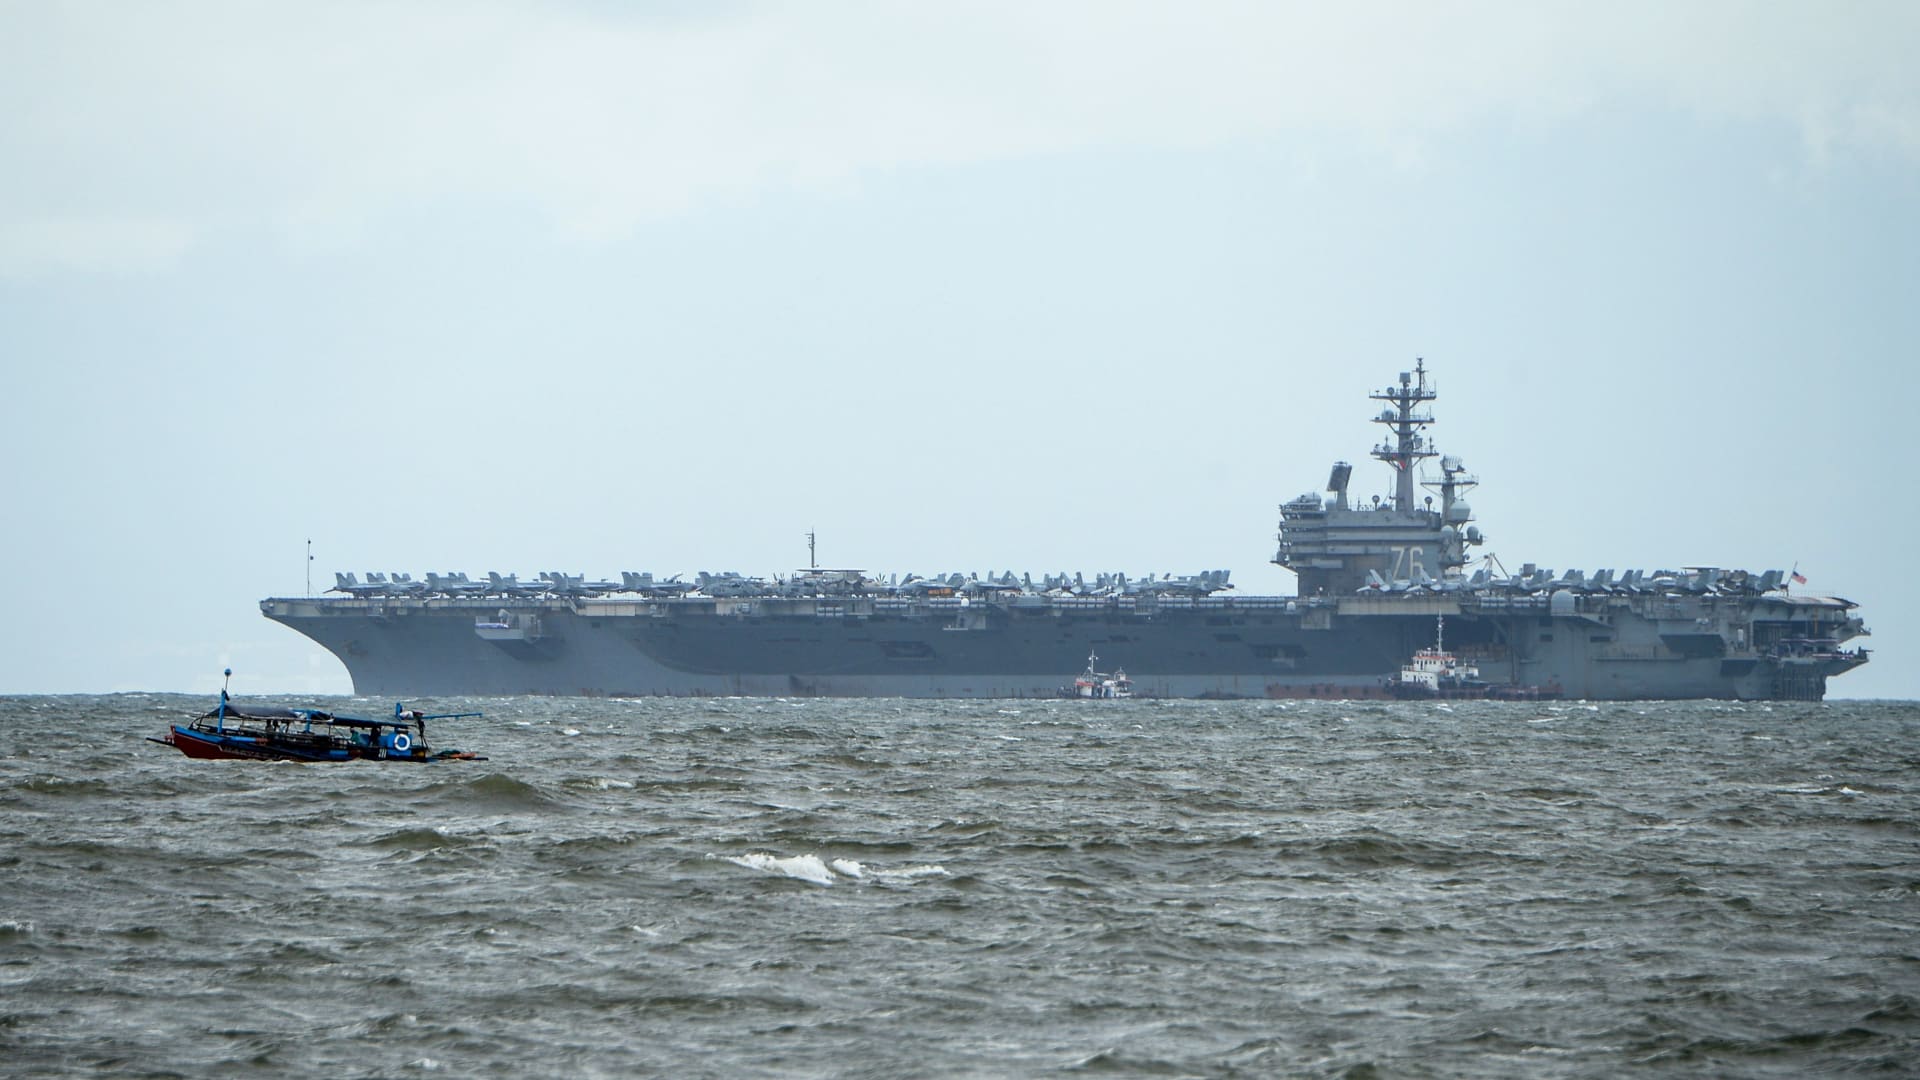 قارب صيد فلبيني (يسار) يمر بسرعة متجاوزًا يو إس إس رونالد ريغان راسيًا في خليج مانيلا في 7 أغسطس، 2019.